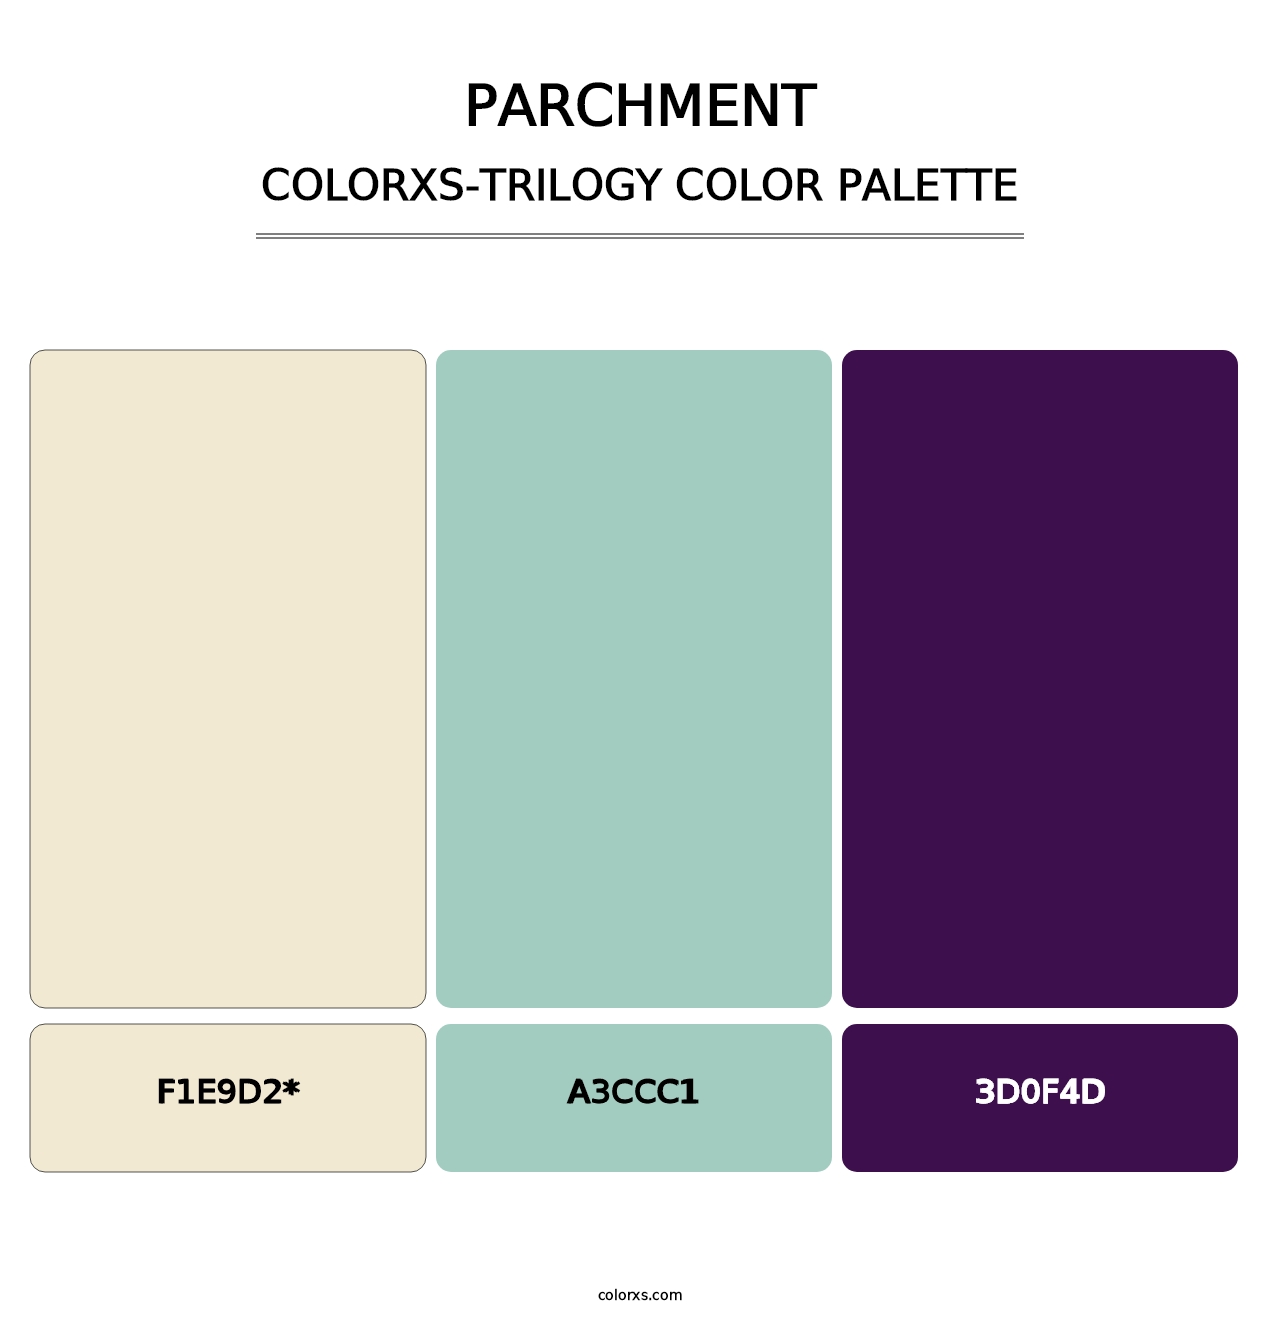 Parchment - Colorxs Trilogy Palette